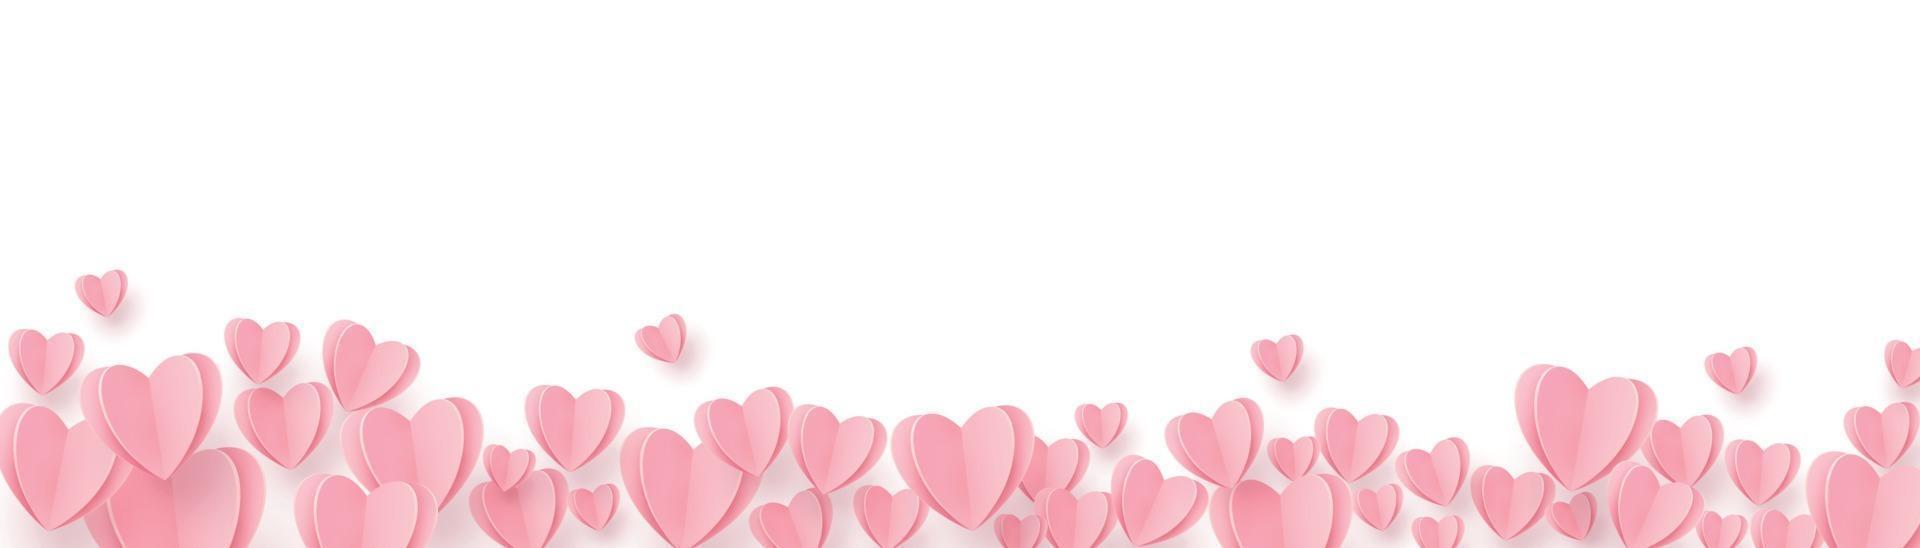 zachte roze-rode harten op een witte achtergrond vector